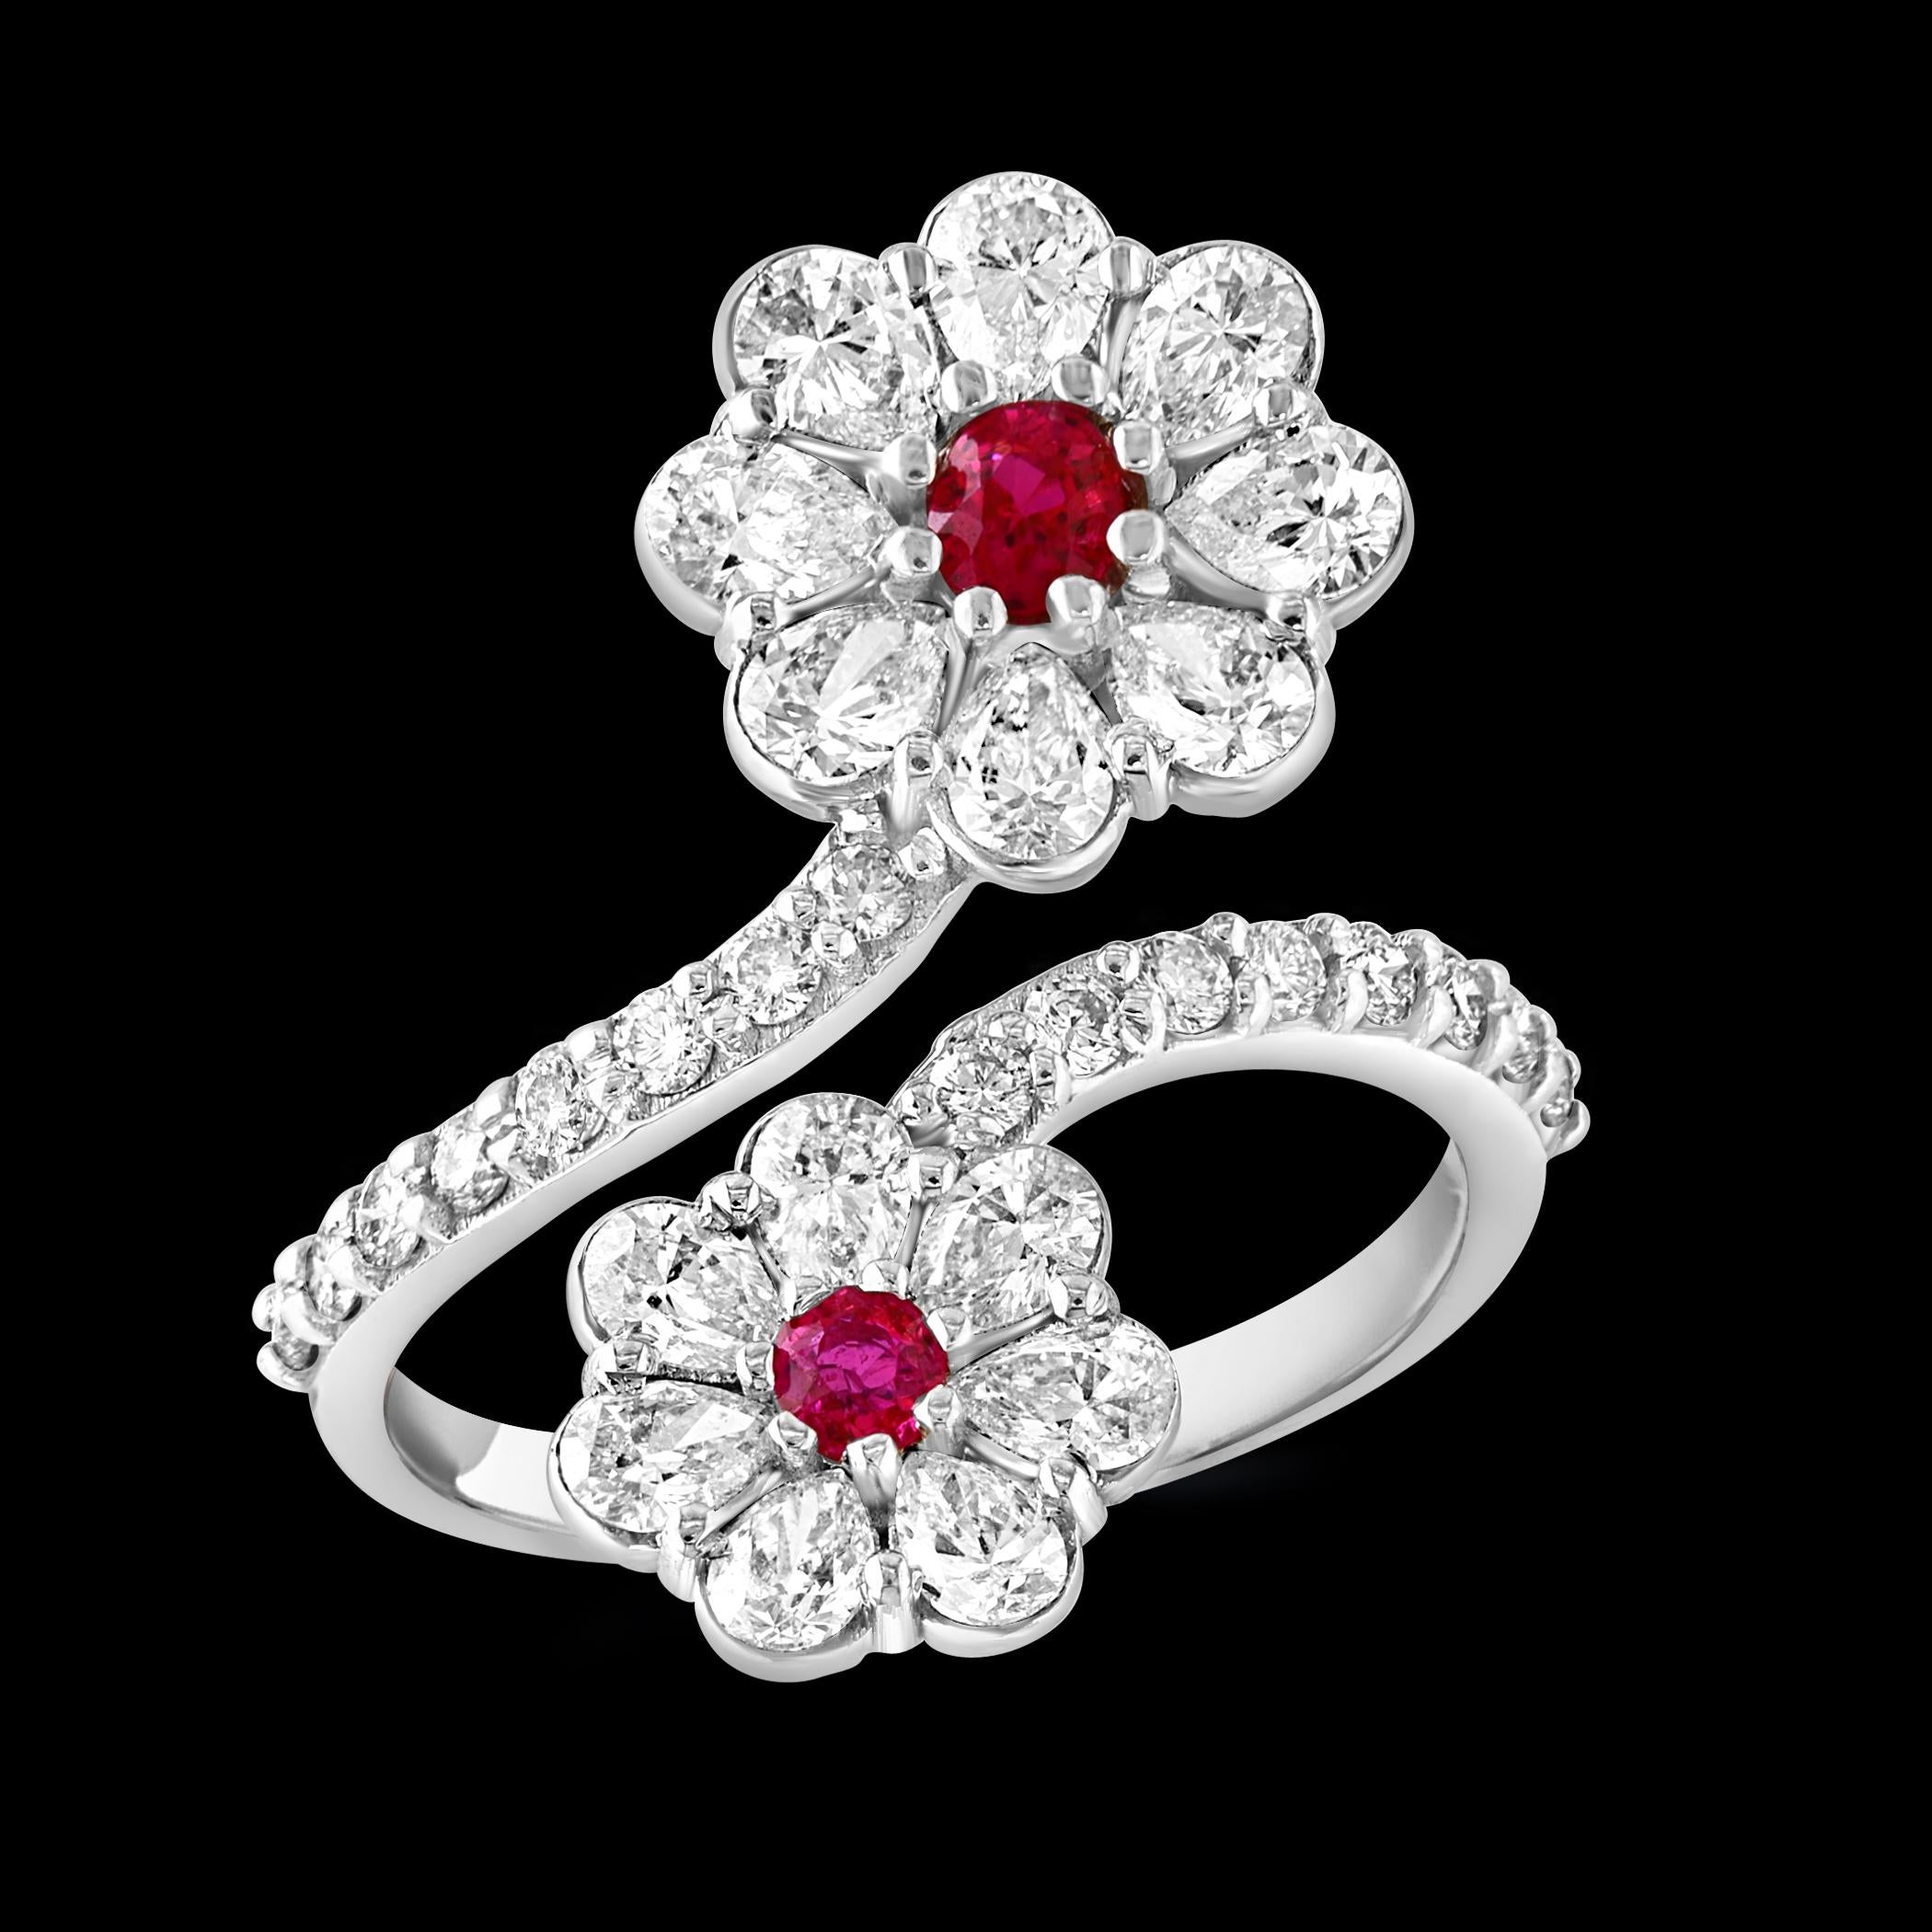 Unser exquisiter Ring aus 18 Karat Gold präsentiert einen atemberaubenden natürlichen Rubin von 0,30 Karat und 2 Karat Diamanten im Brillantschliff und in Birnenform, gefasst in glänzendem Weißgold. Dieser Ring ist ein wahres Symbol für Schönheit